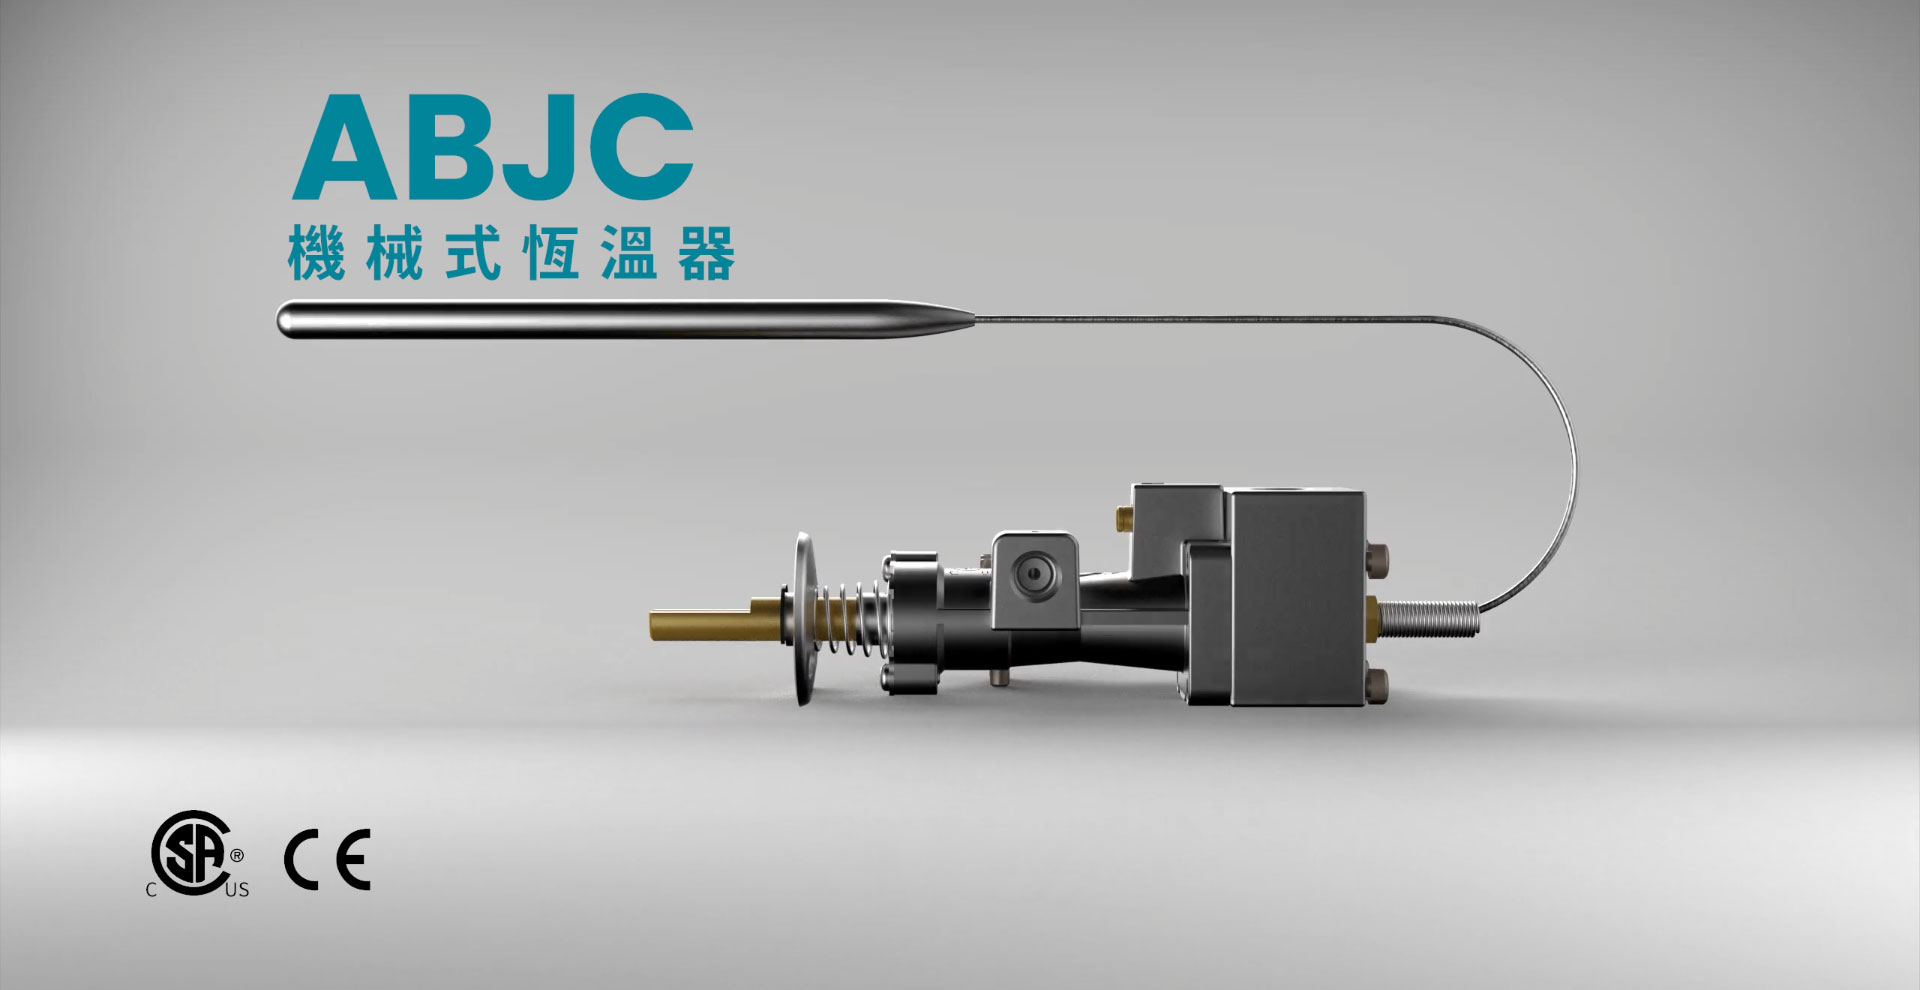 ABJC 機械式恆溫器